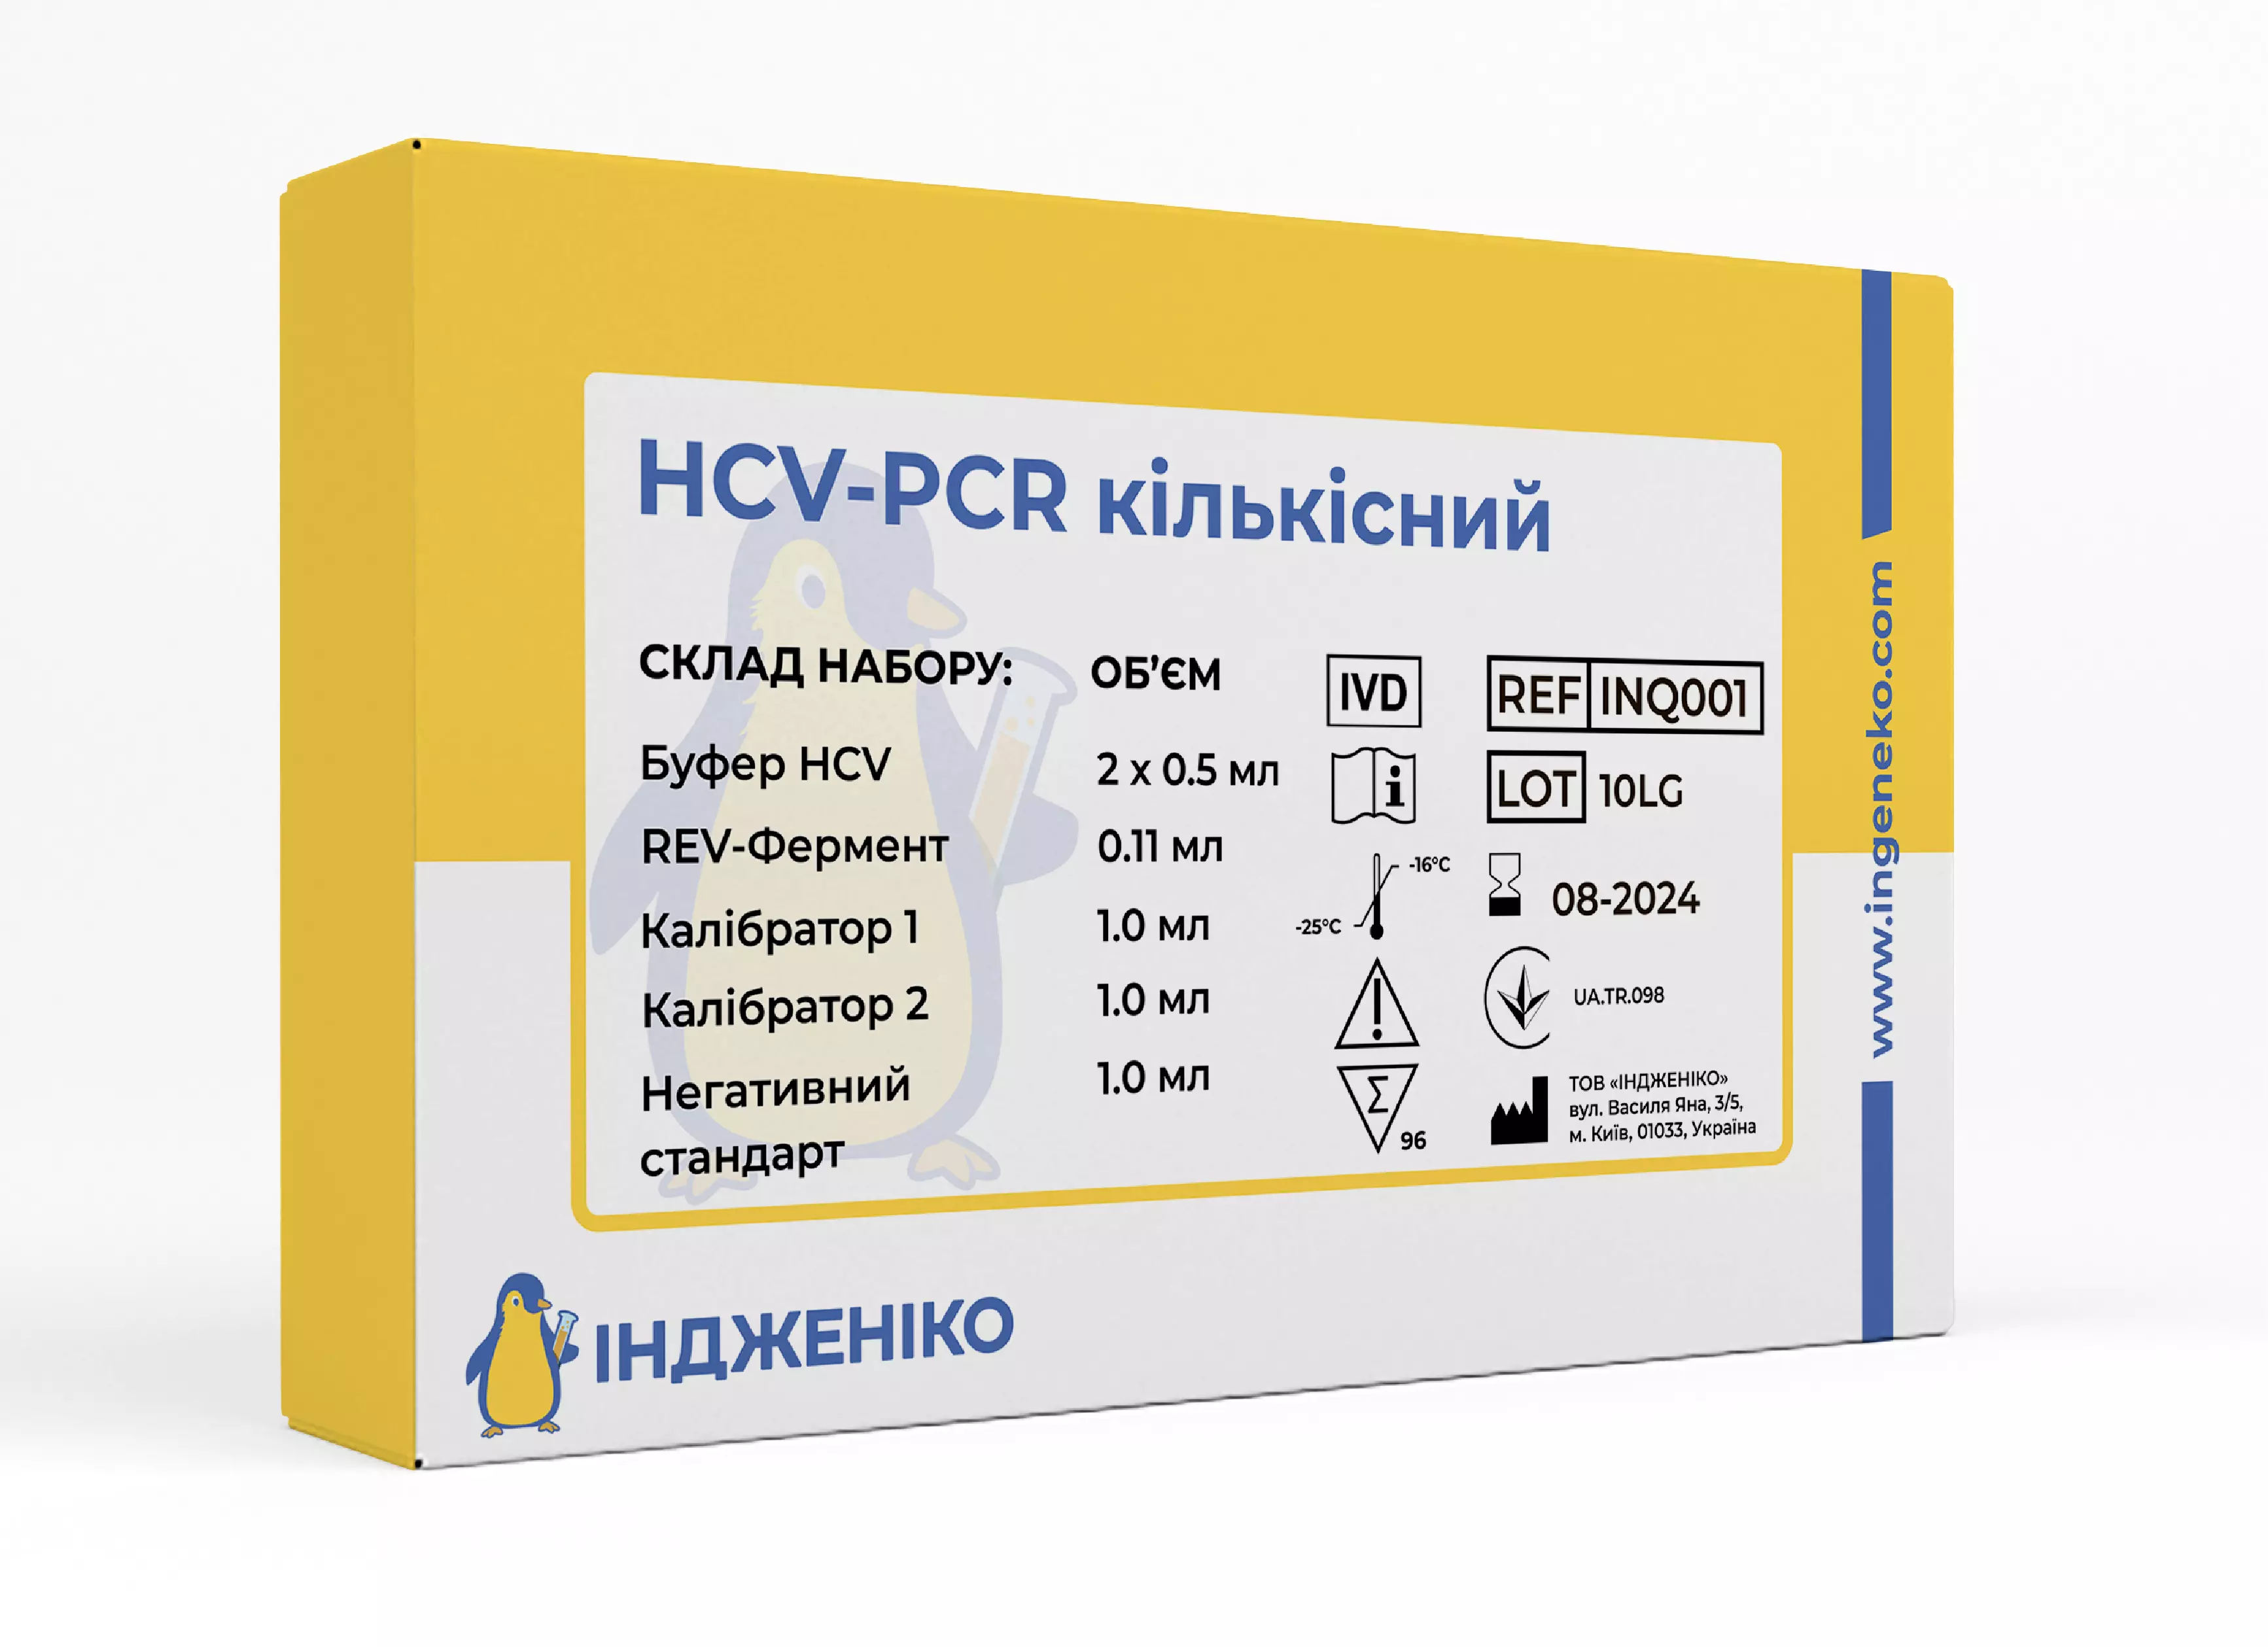 HCV-PCR кількісний